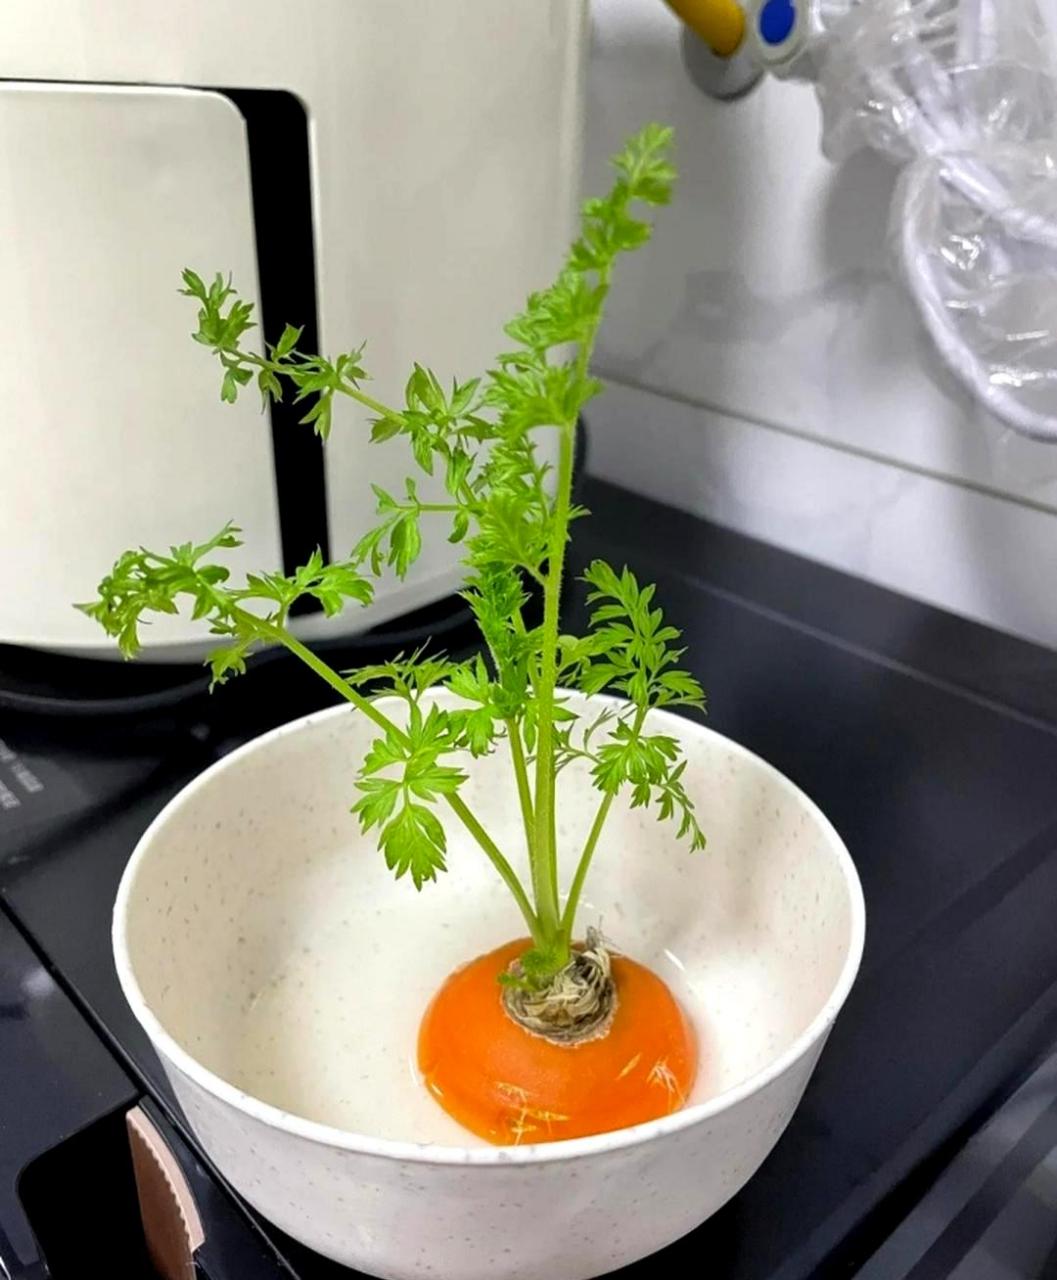 胡萝卜放了两天竟然发芽了,如果继续生长,会不会长出新的胡萝卜呢?